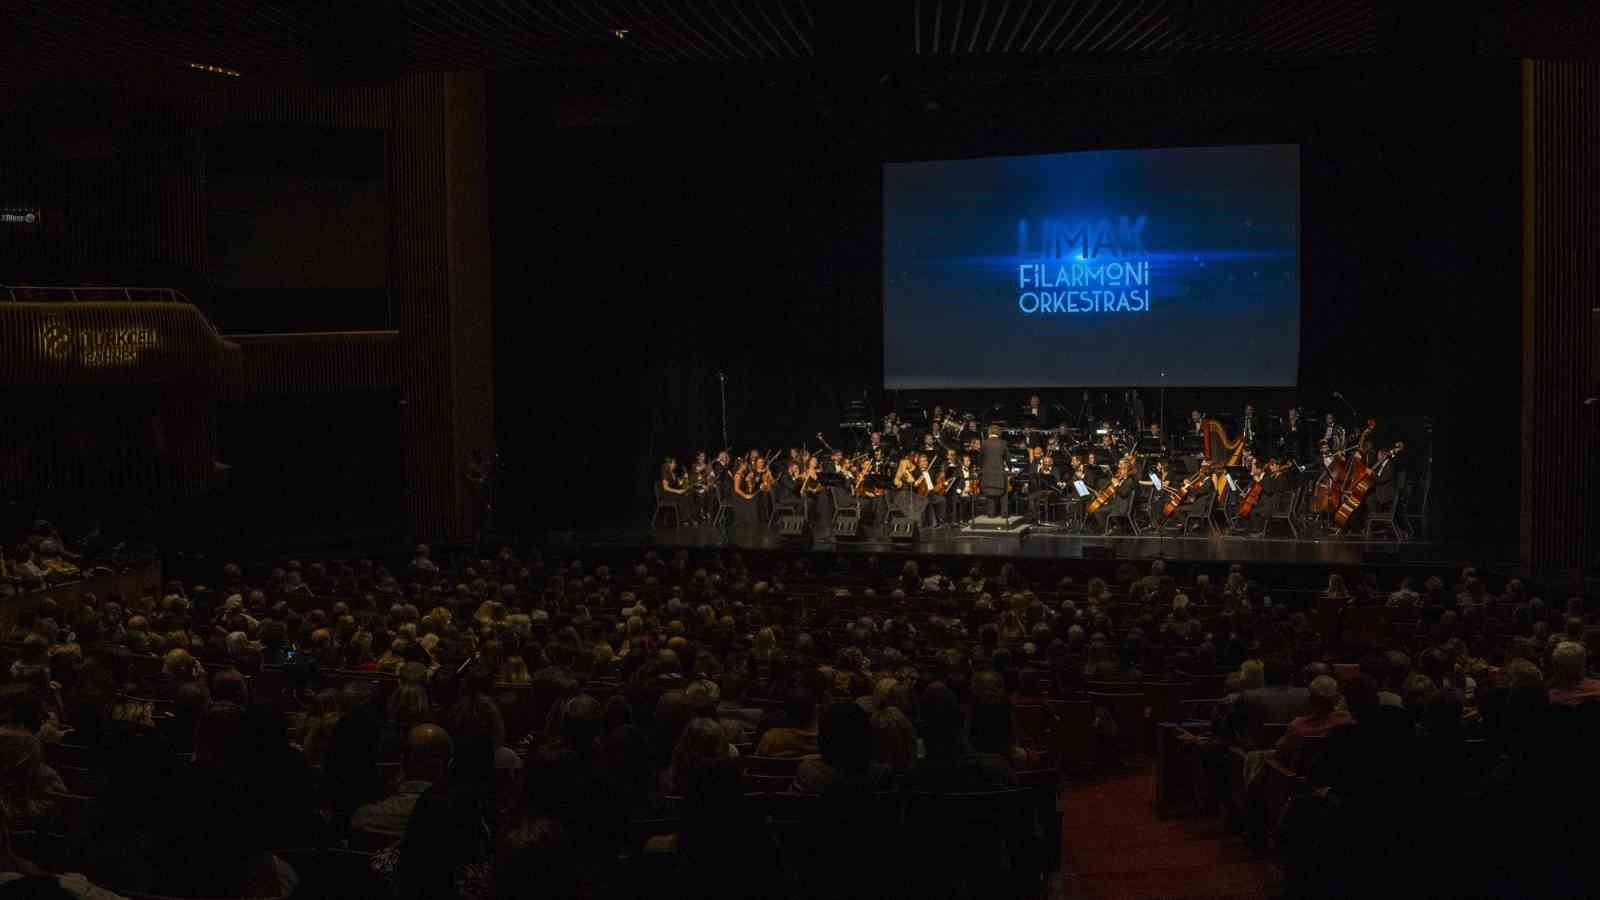 Limak Filarmoni Orkestrasi Yeni Yil Konserleri Basliyor 1 Doued81A